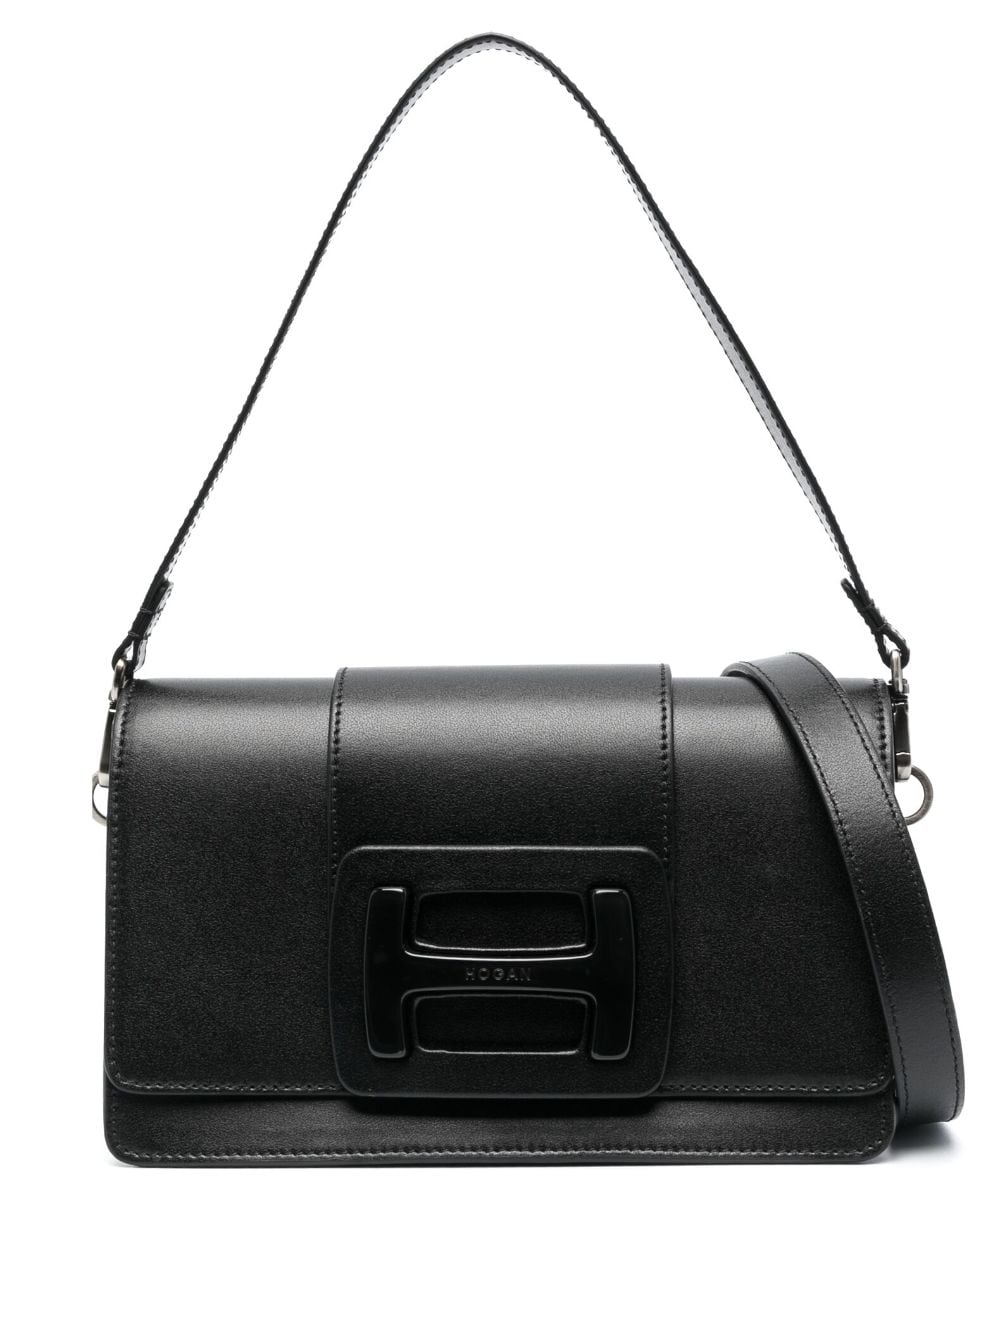 HOGAN Black H-Handbag Leather Shoulder Bag for Women